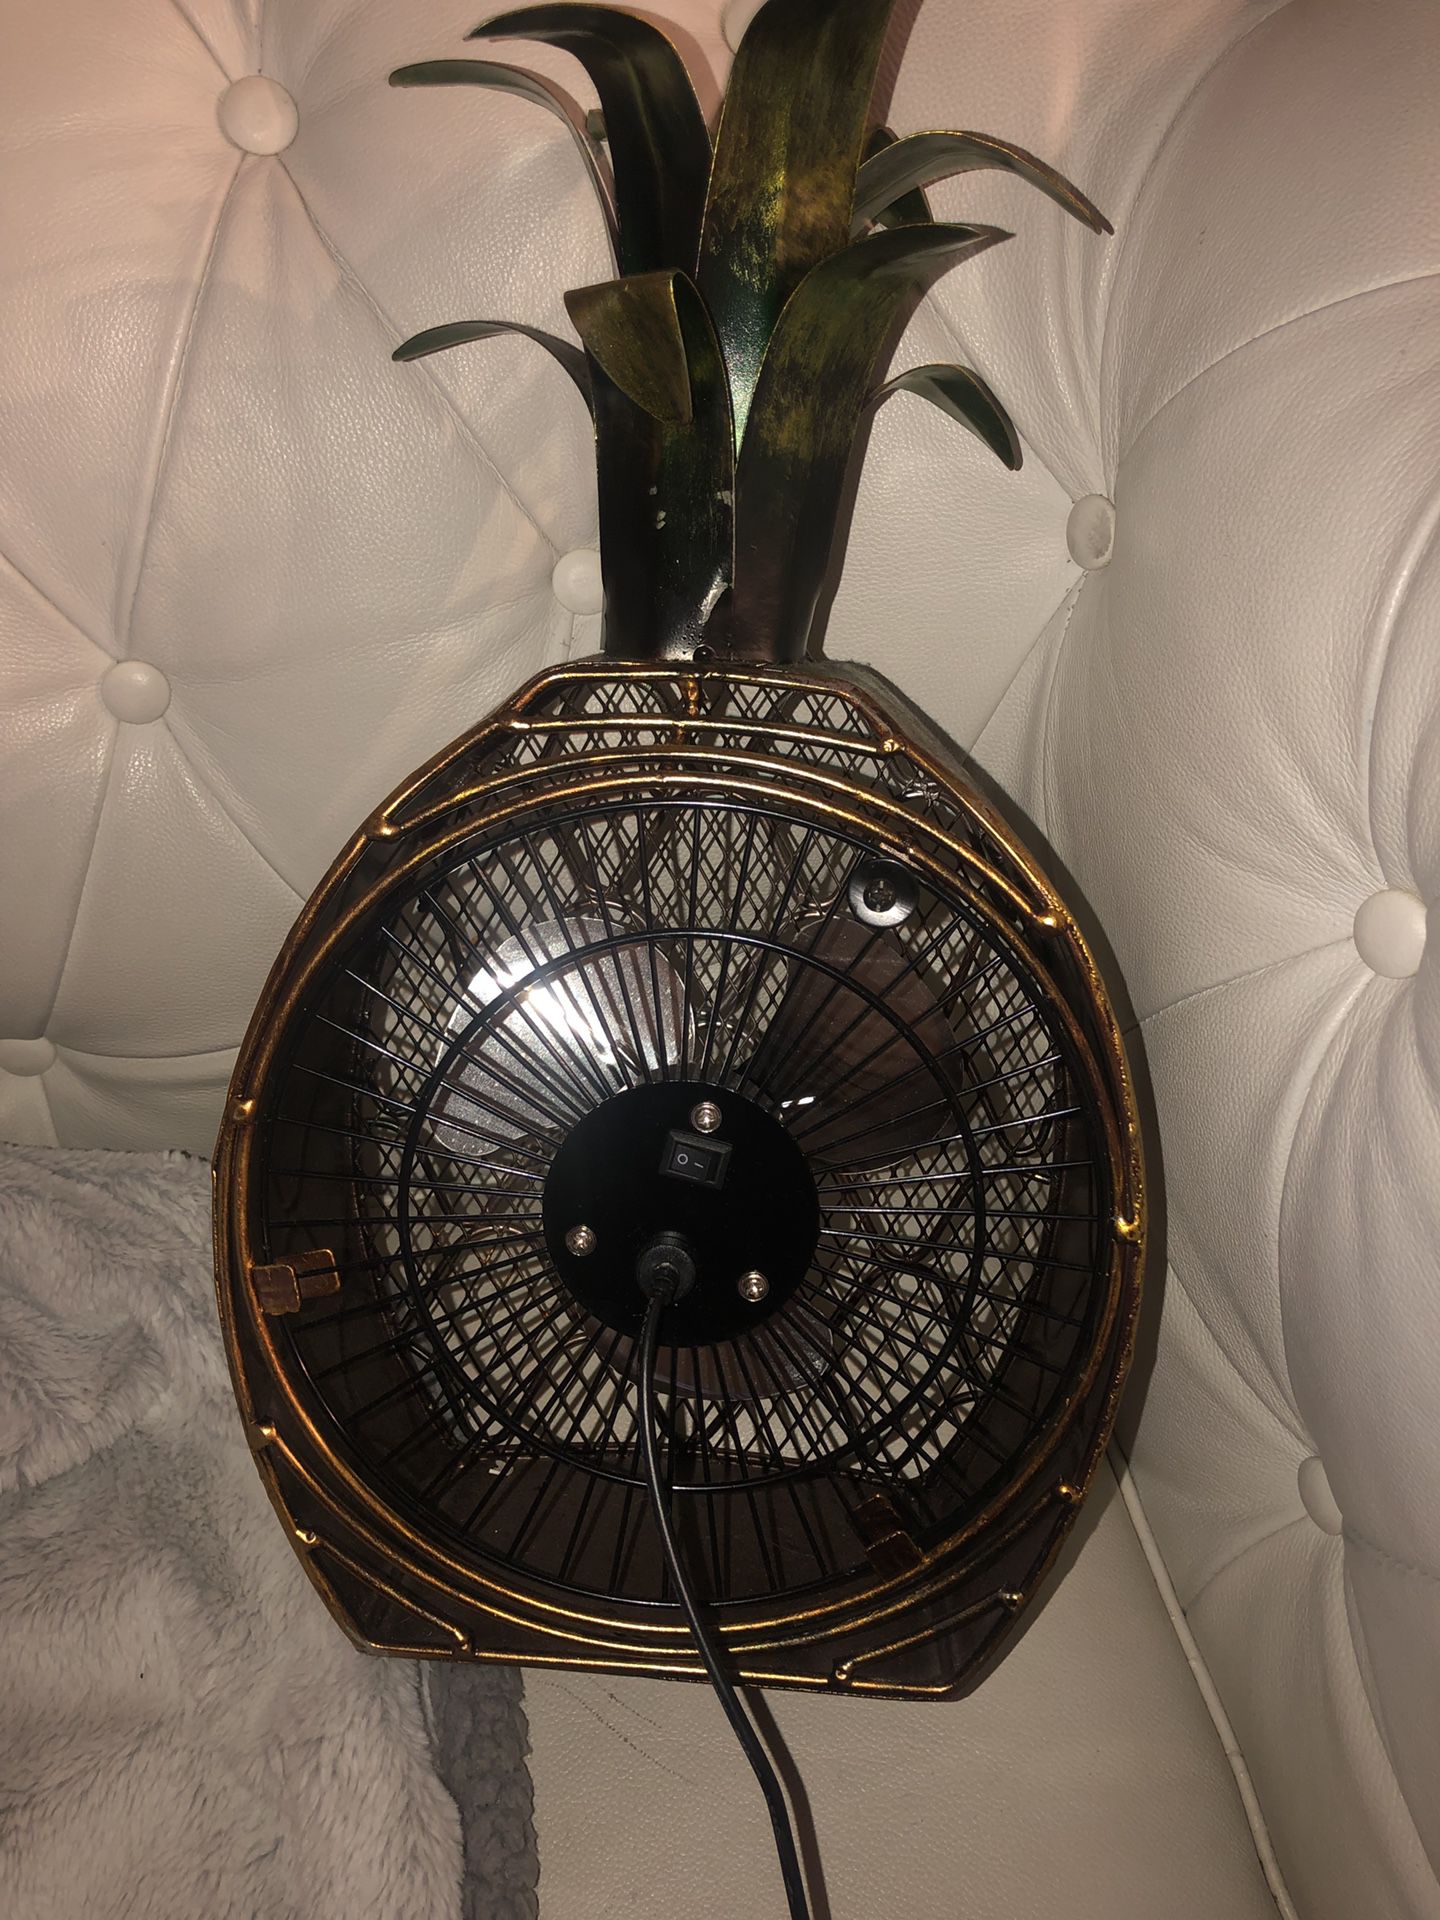 Vintage looking pineapple fan